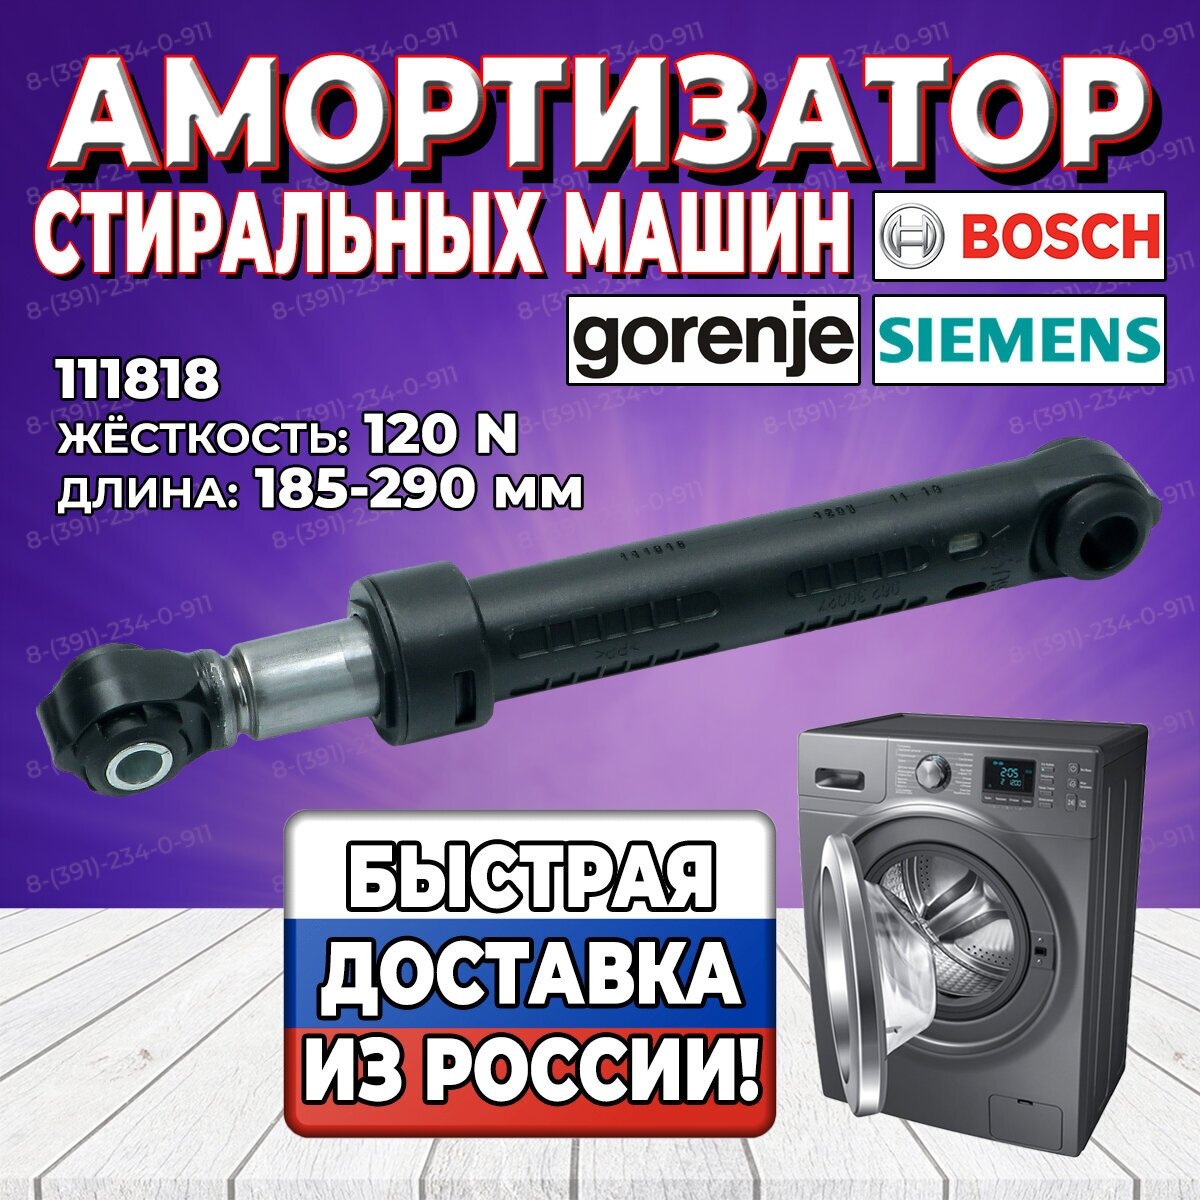 Амортизатор стиральной машины Bosch Siemens Gorenje (Бош Сименс Горенье) 120N L185-290mm 111818 (274404 155262 159737)